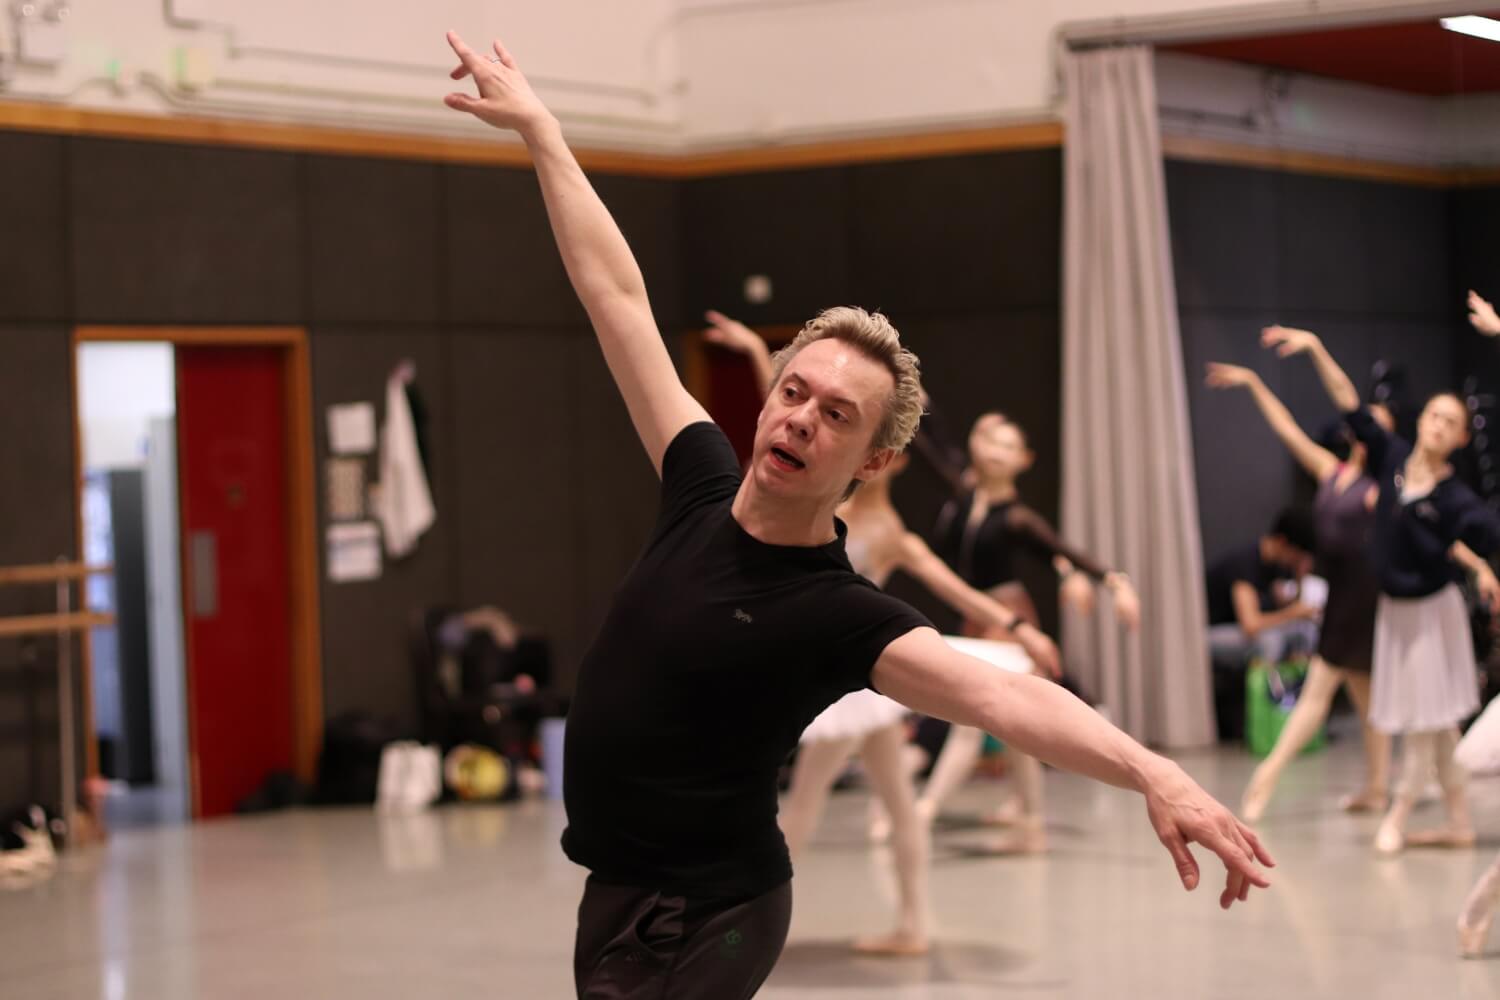 編舞馬拉科夫認為古典芭蕾是最困難的舞蹈形式之一，專攻古典芭蕾的舞者也能輕易掌握其他舞蹈風格。